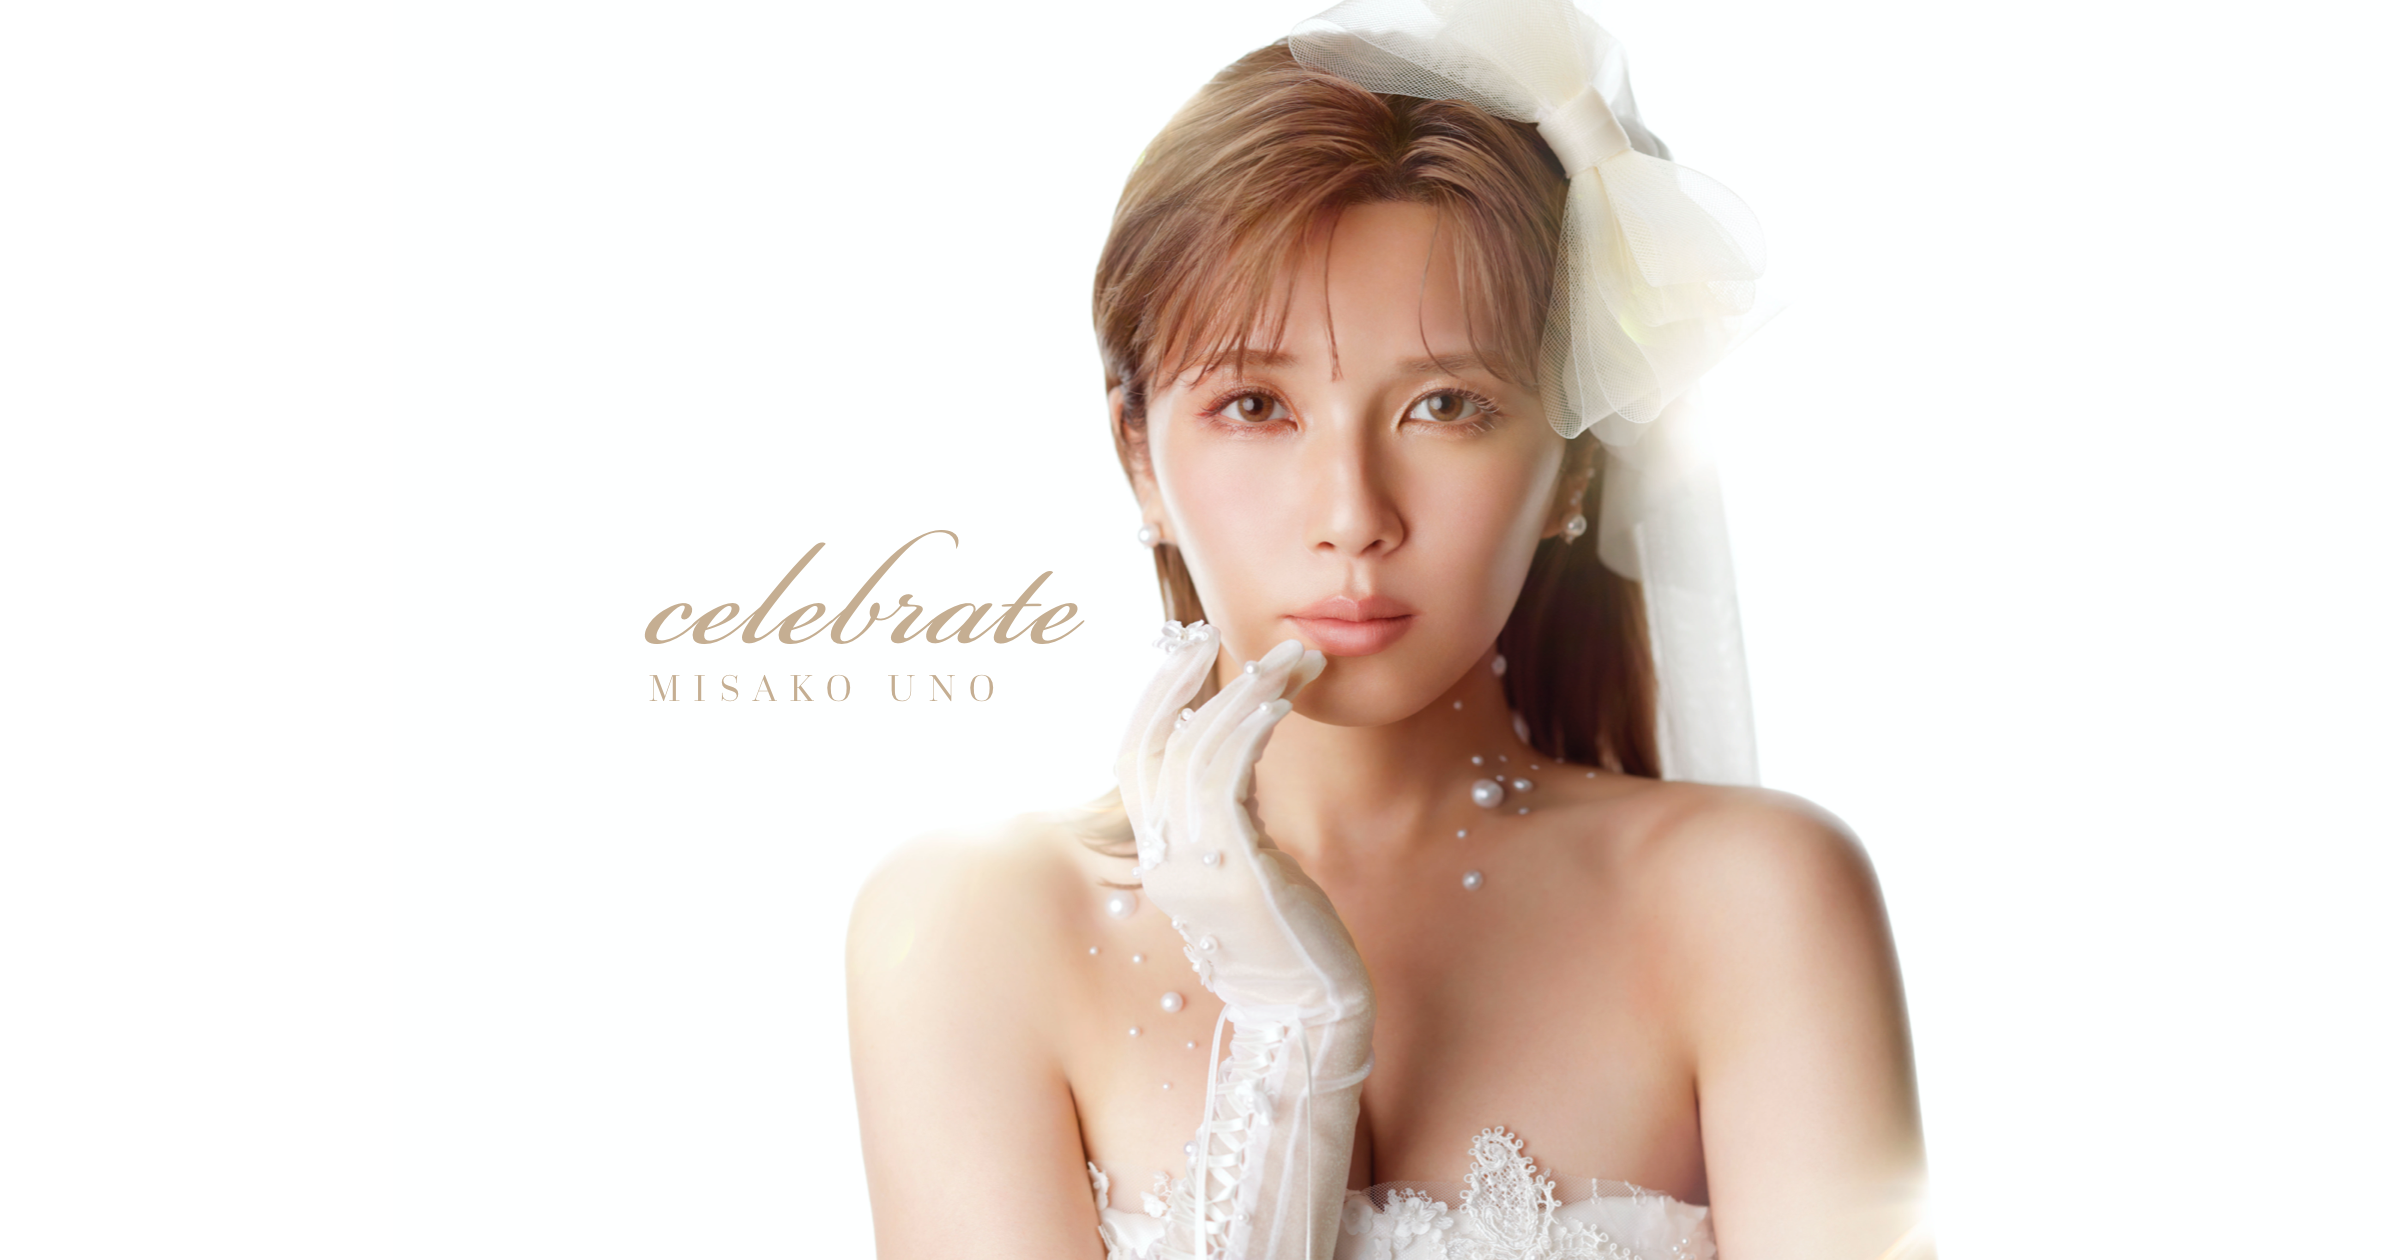 宇野実彩子(AAA) New Digital Single「celebrate」特設サイト